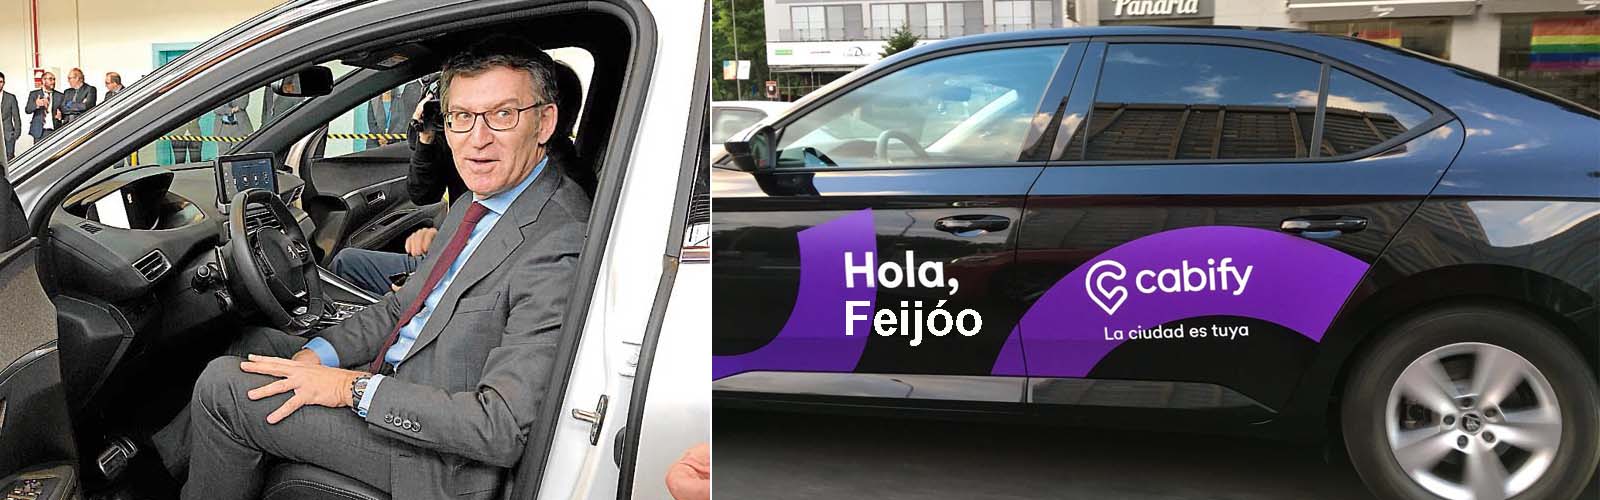 Pladesemapesga pone a disposición de Feijóo el ahorro de más de 50 millones  de euros de los coches oficiales sin renunciar a nada legal. | Xornal  Galicia